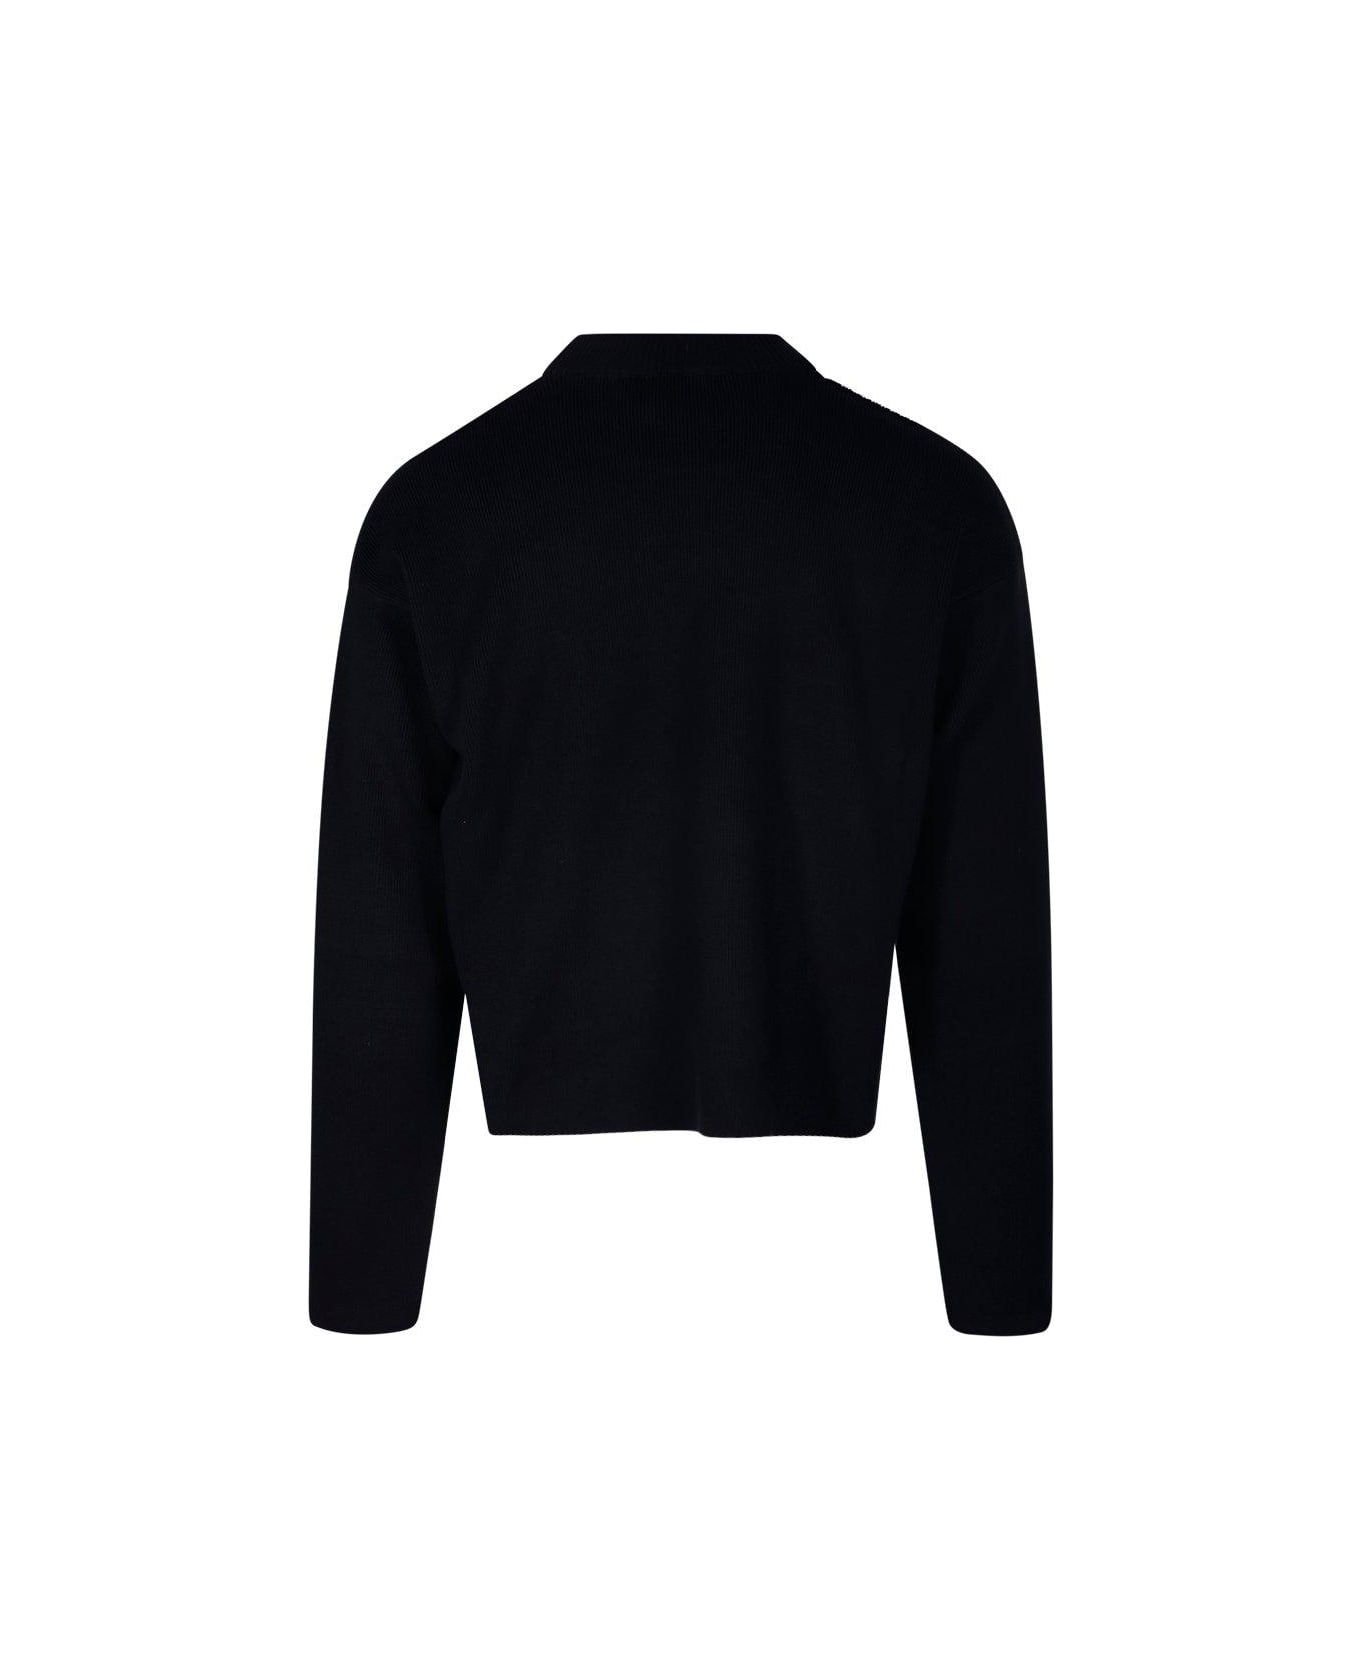 Ami Alexandre Mattiussi Logo Embroidered Knit Sweater - Black